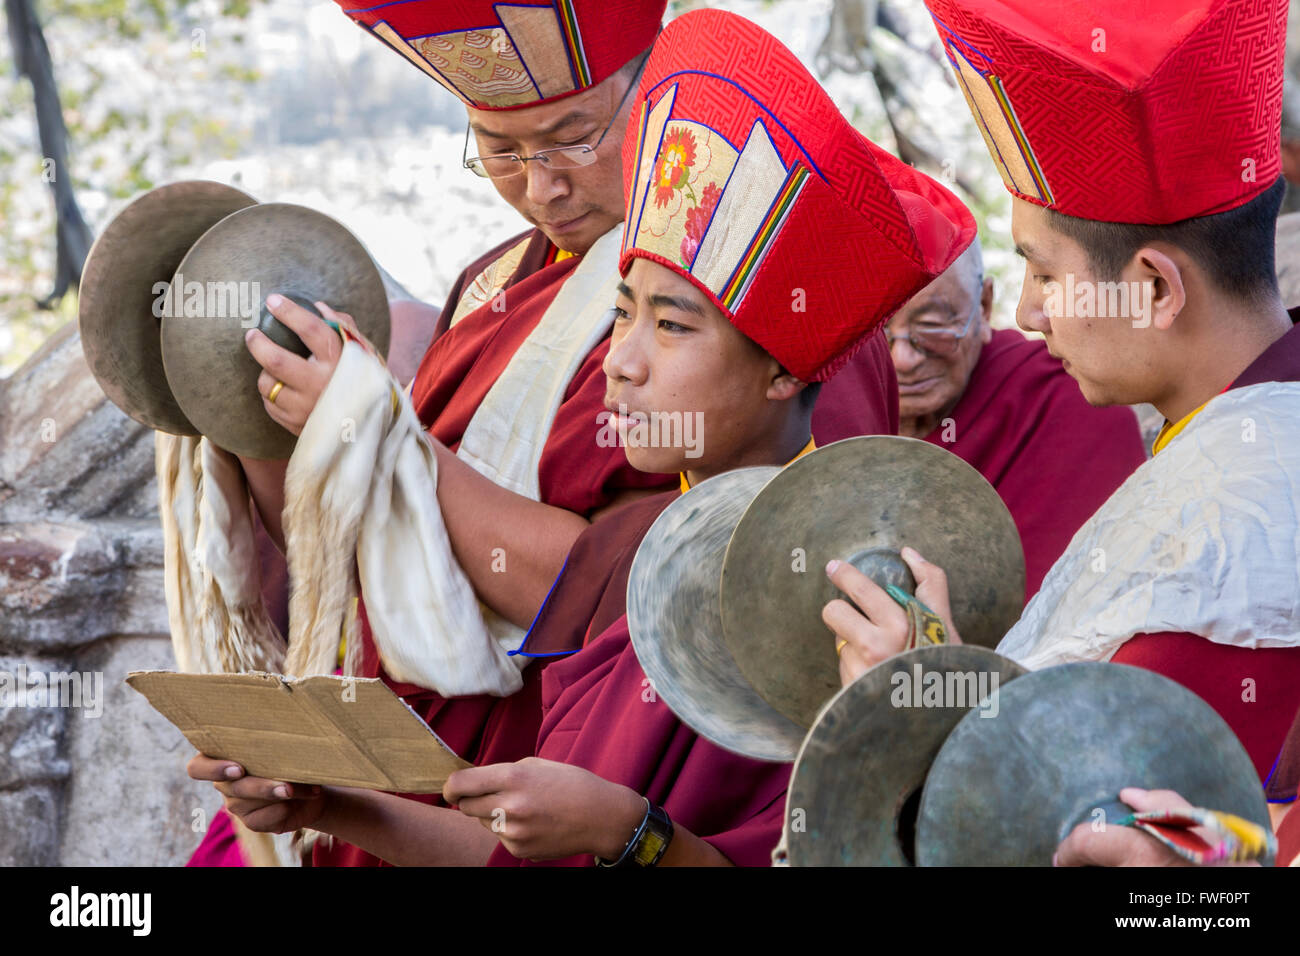 Le Népal, Katmandou, Swayambhunath. Moines bouddhistes tibétains jouant des cymbales lors d'une cérémonie. Banque D'Images